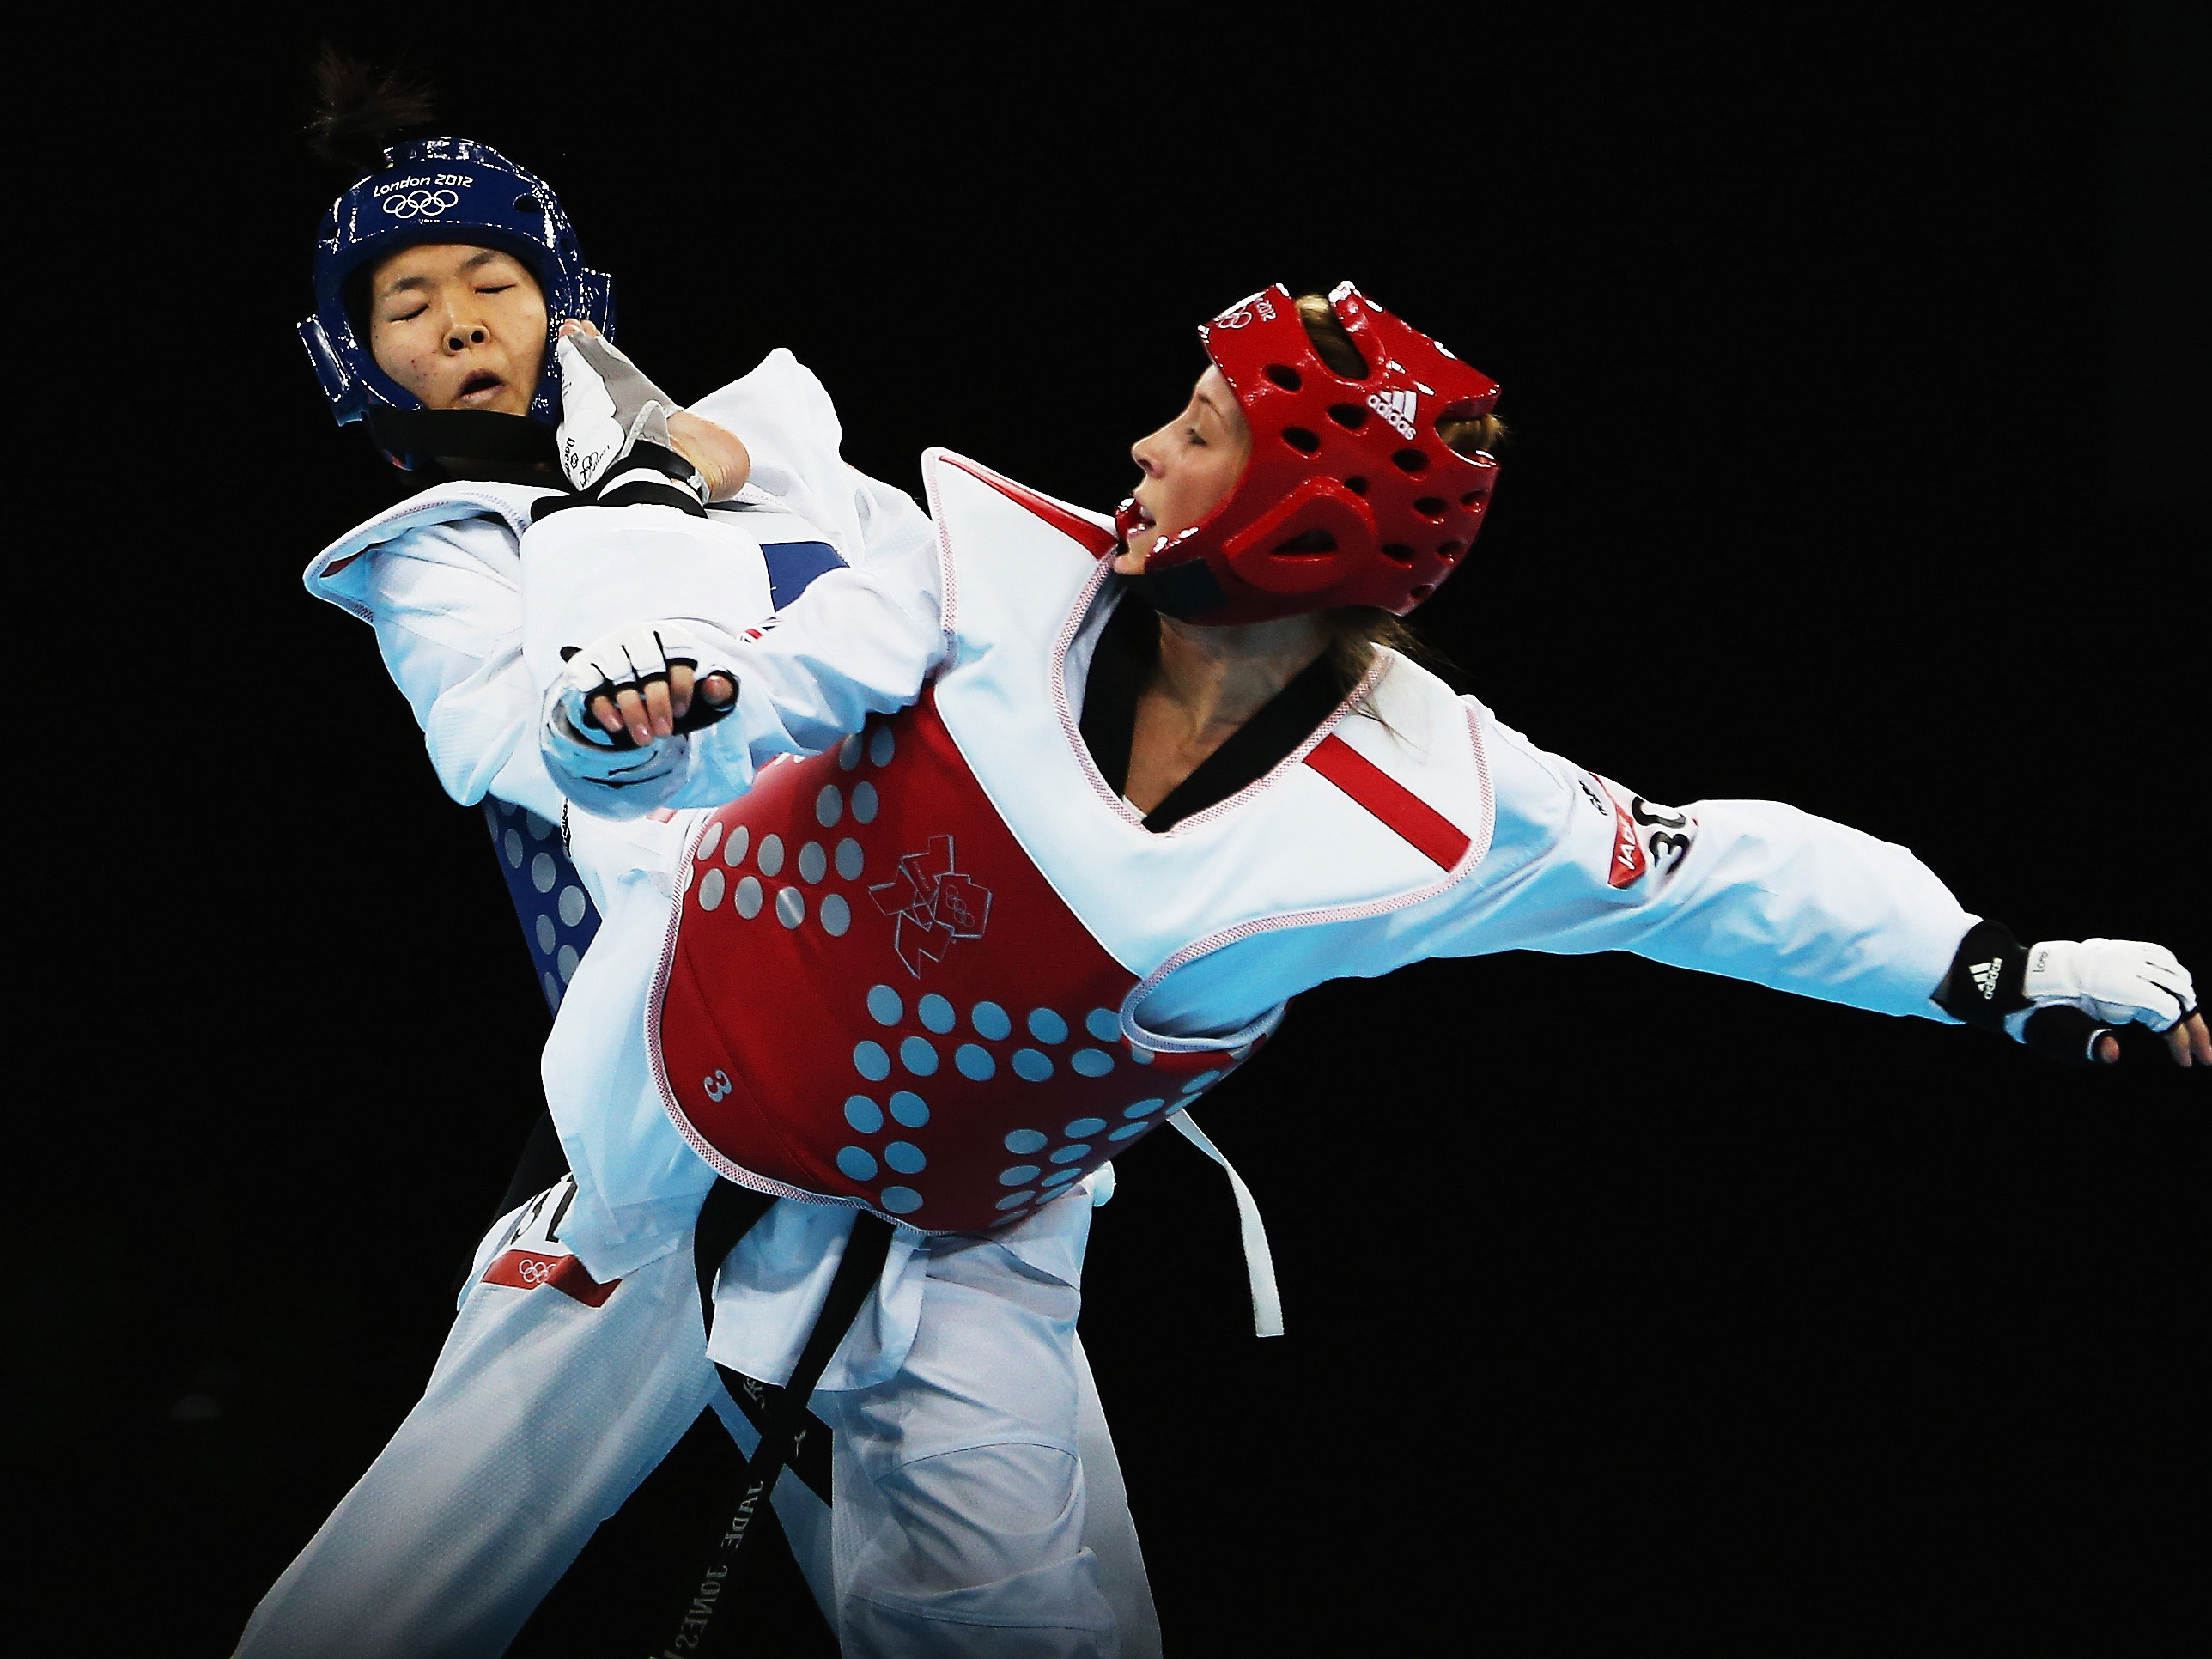 Taekwondo: Mayu Hamada vs. Jade Jones, The 2012 Olympic Games in London. 2580x1940 HD Wallpaper.